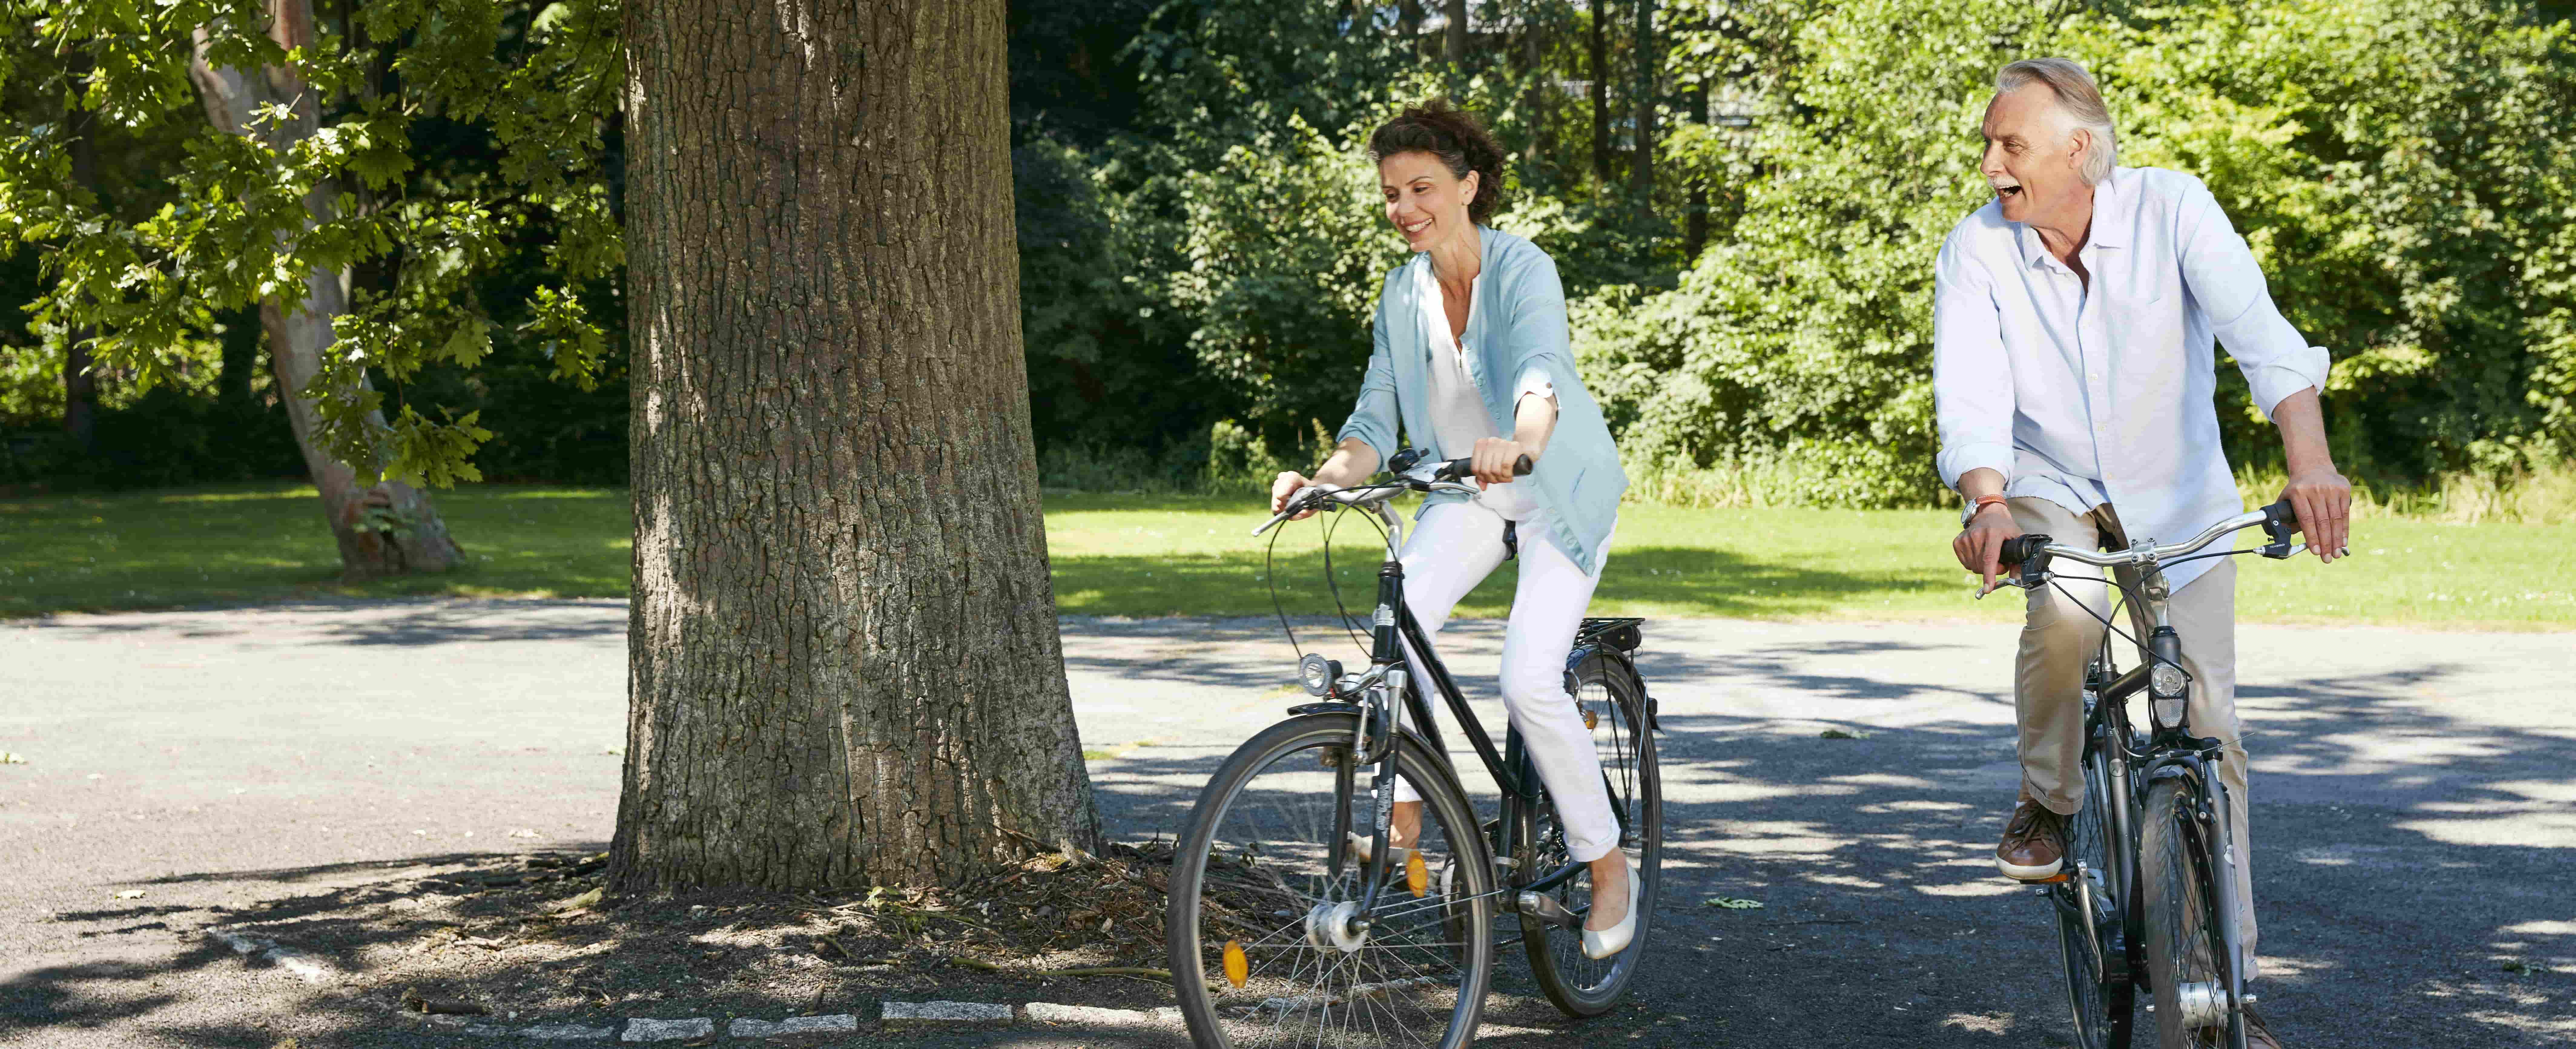 Na foto, há um homem e uma mulher em uma área arborizada. Eles estão andando de bicicleta.